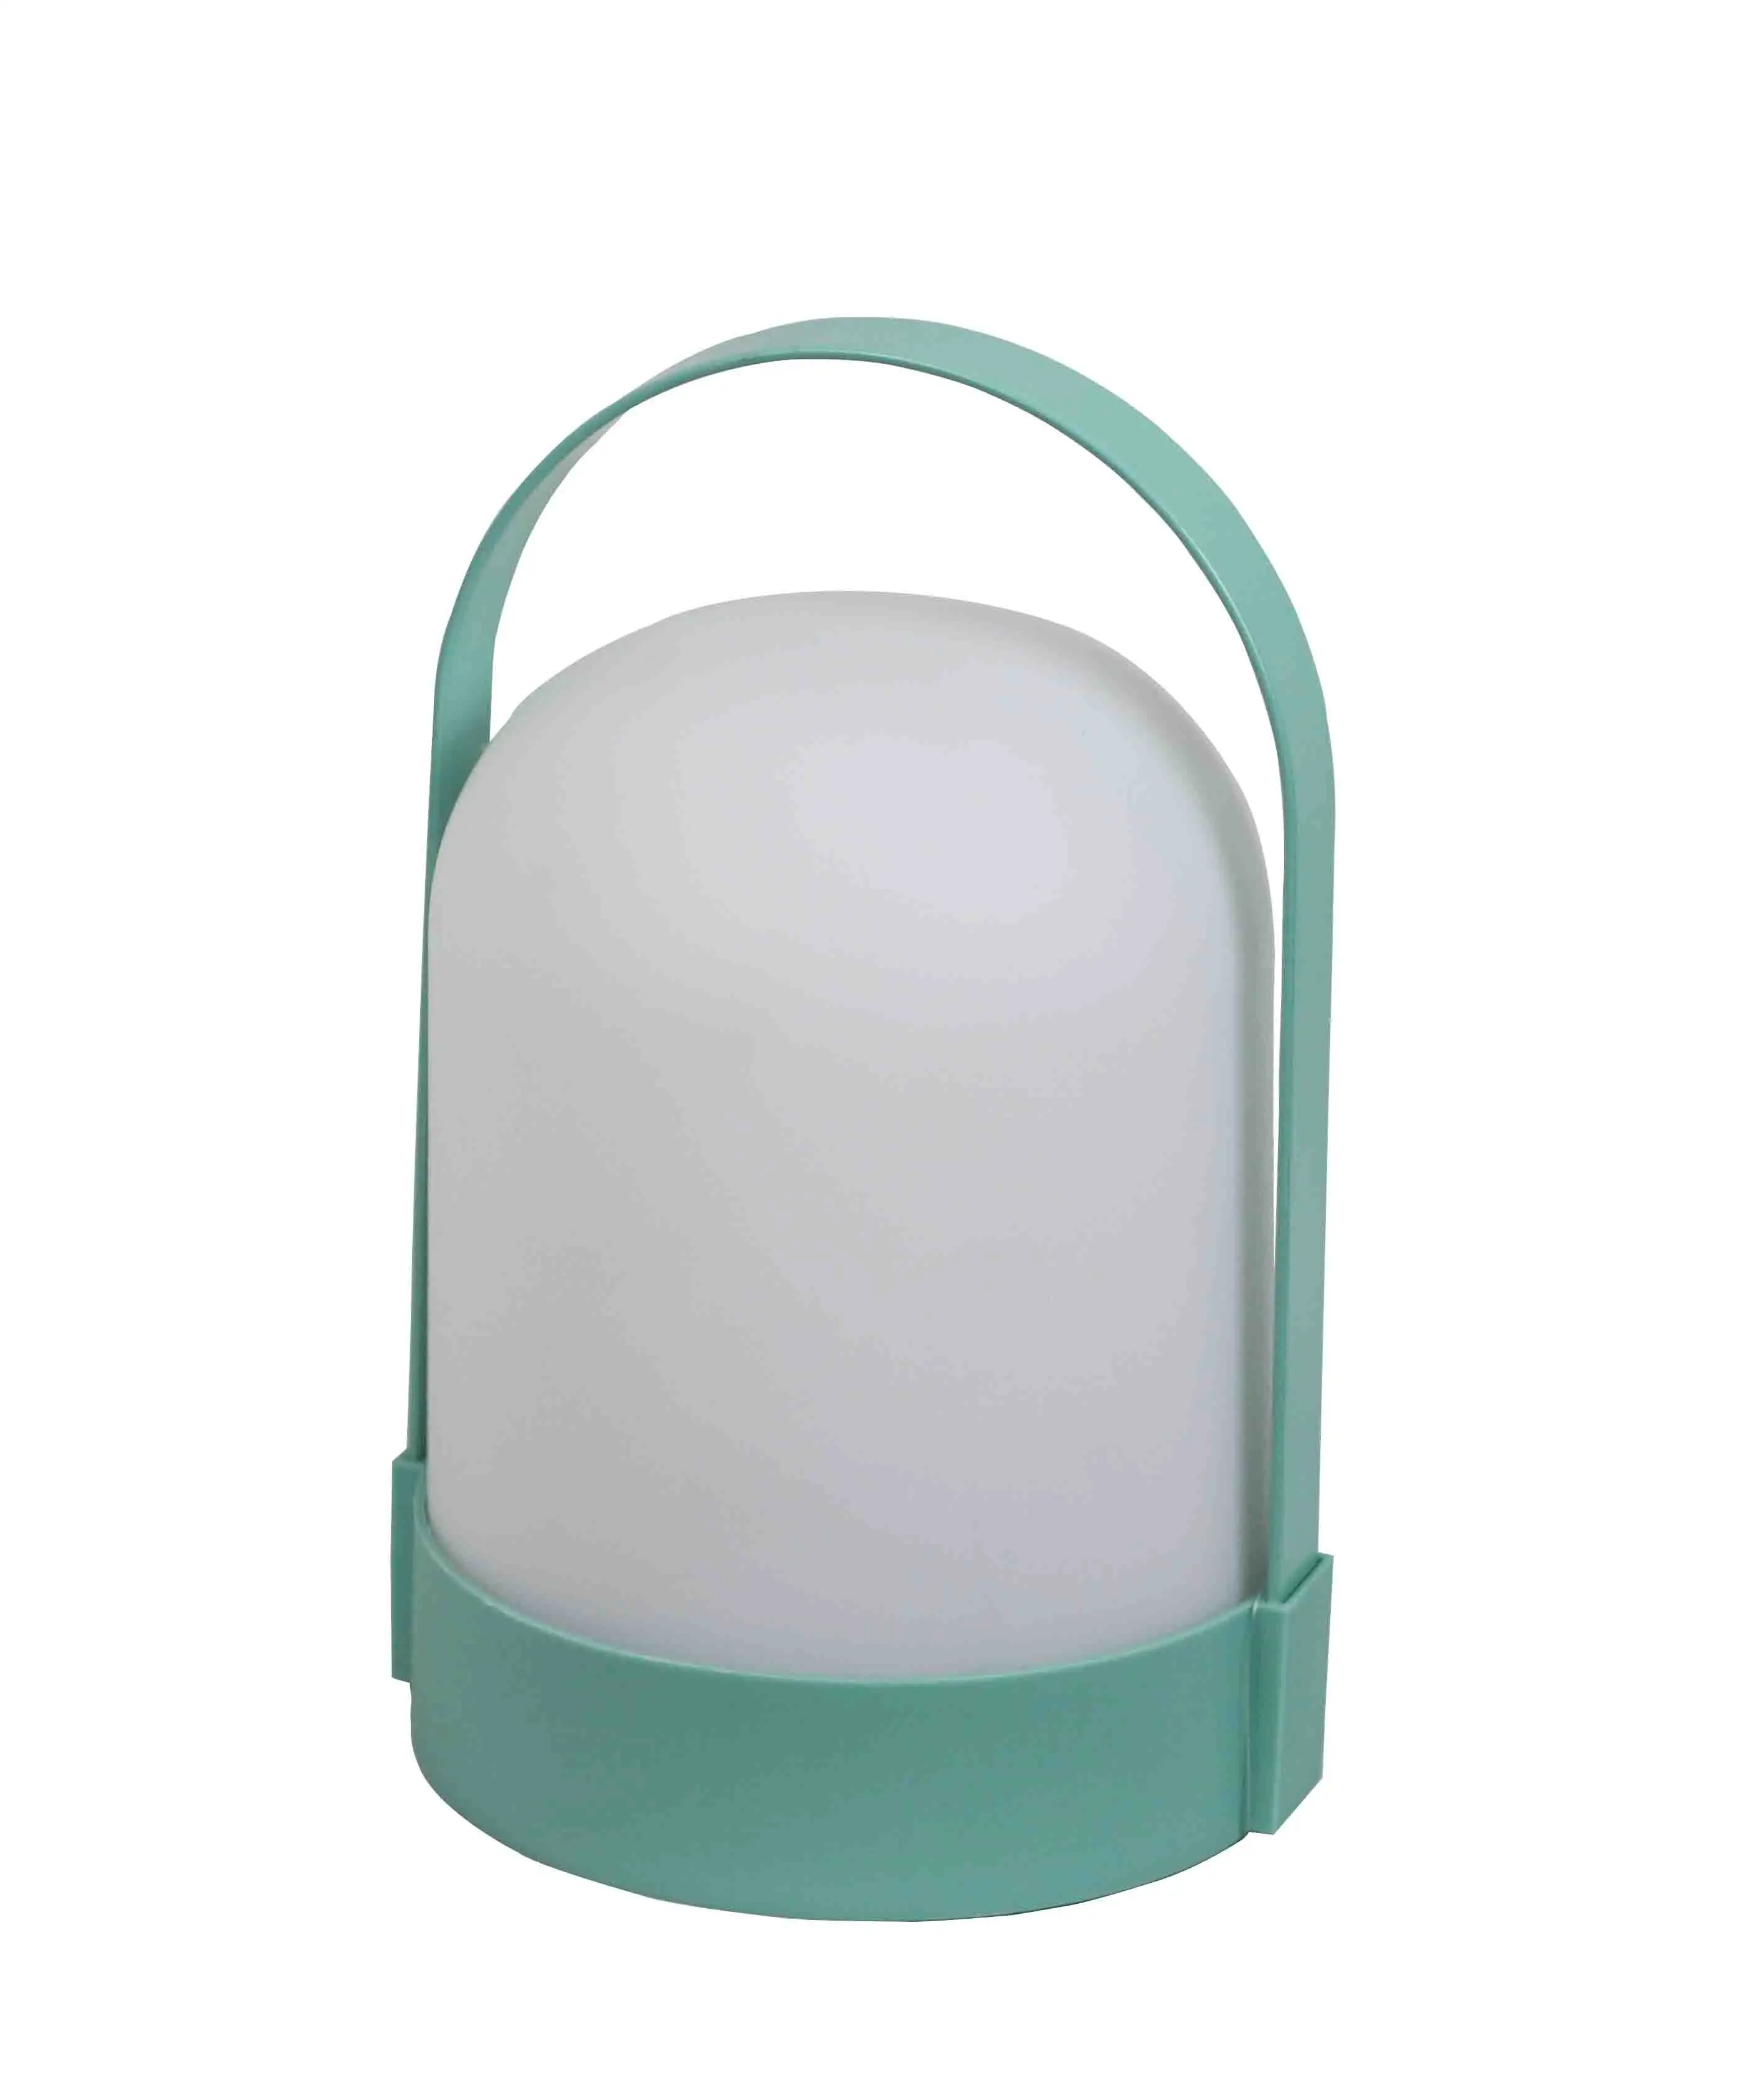 LED Lampe mit 3 * AA batterie betrieb, Nachttisch Lampe, glatte Griff Bequem zu Tragen für Indoor Outdoor Mit